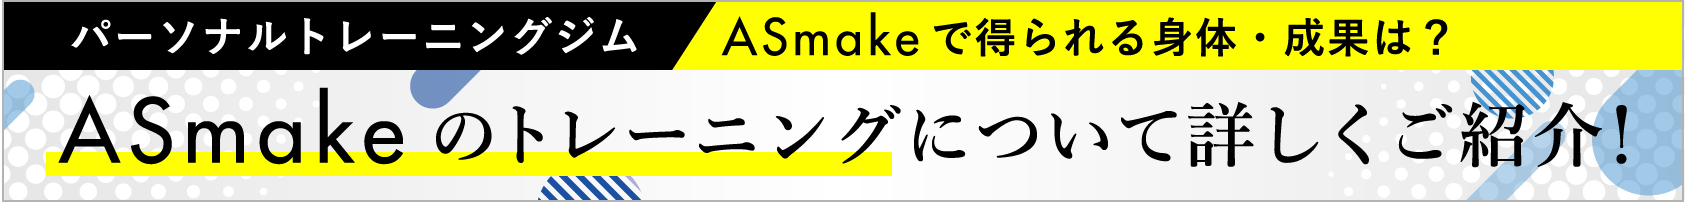 Asmakeのトレーニングについて詳しくご紹介